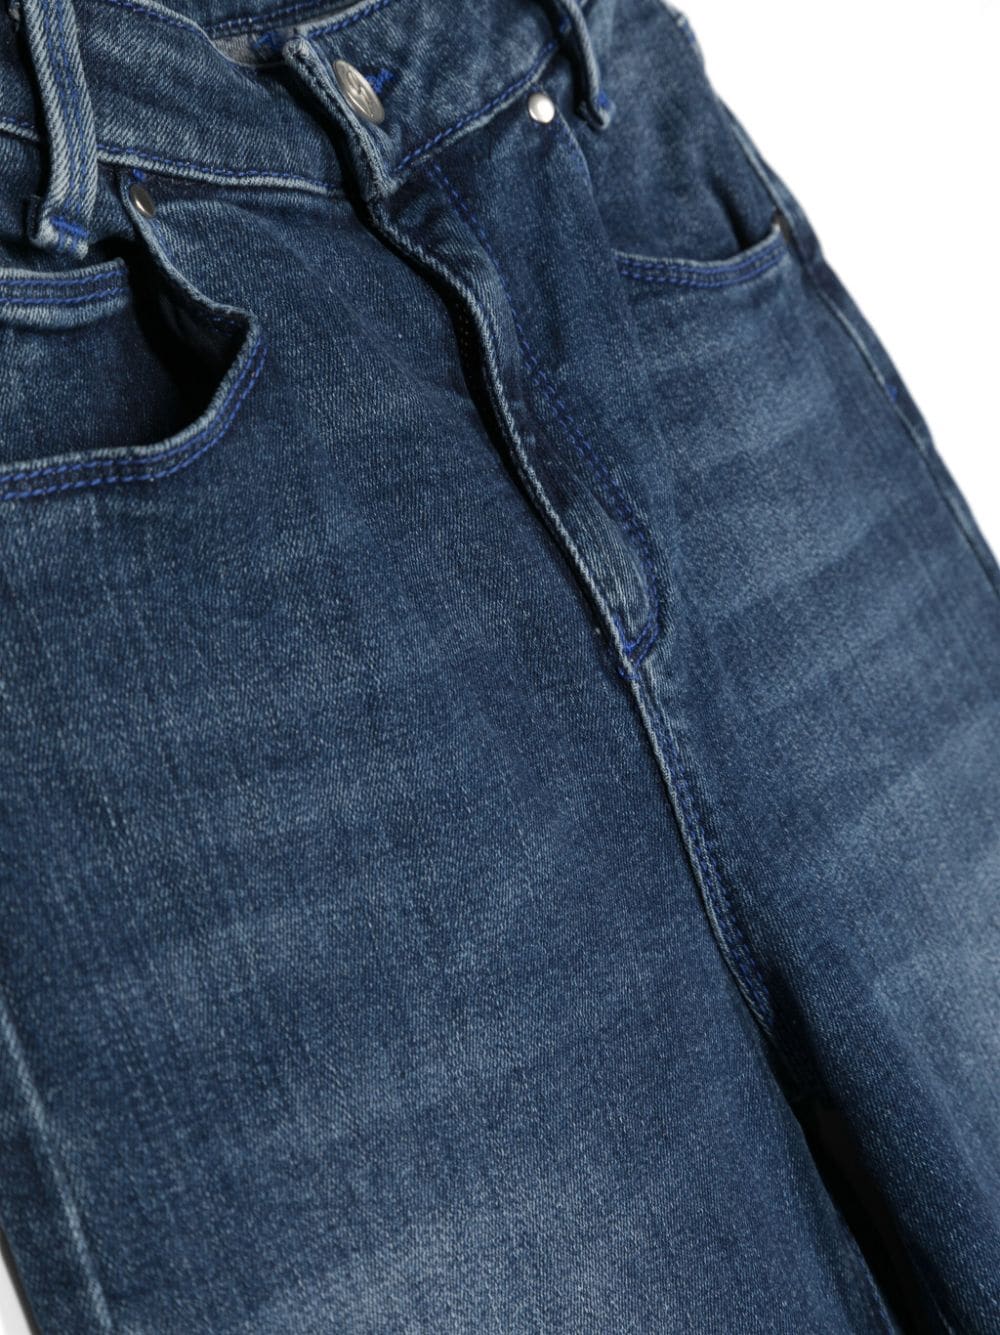 Pantaloni blu jeans bambina con logo